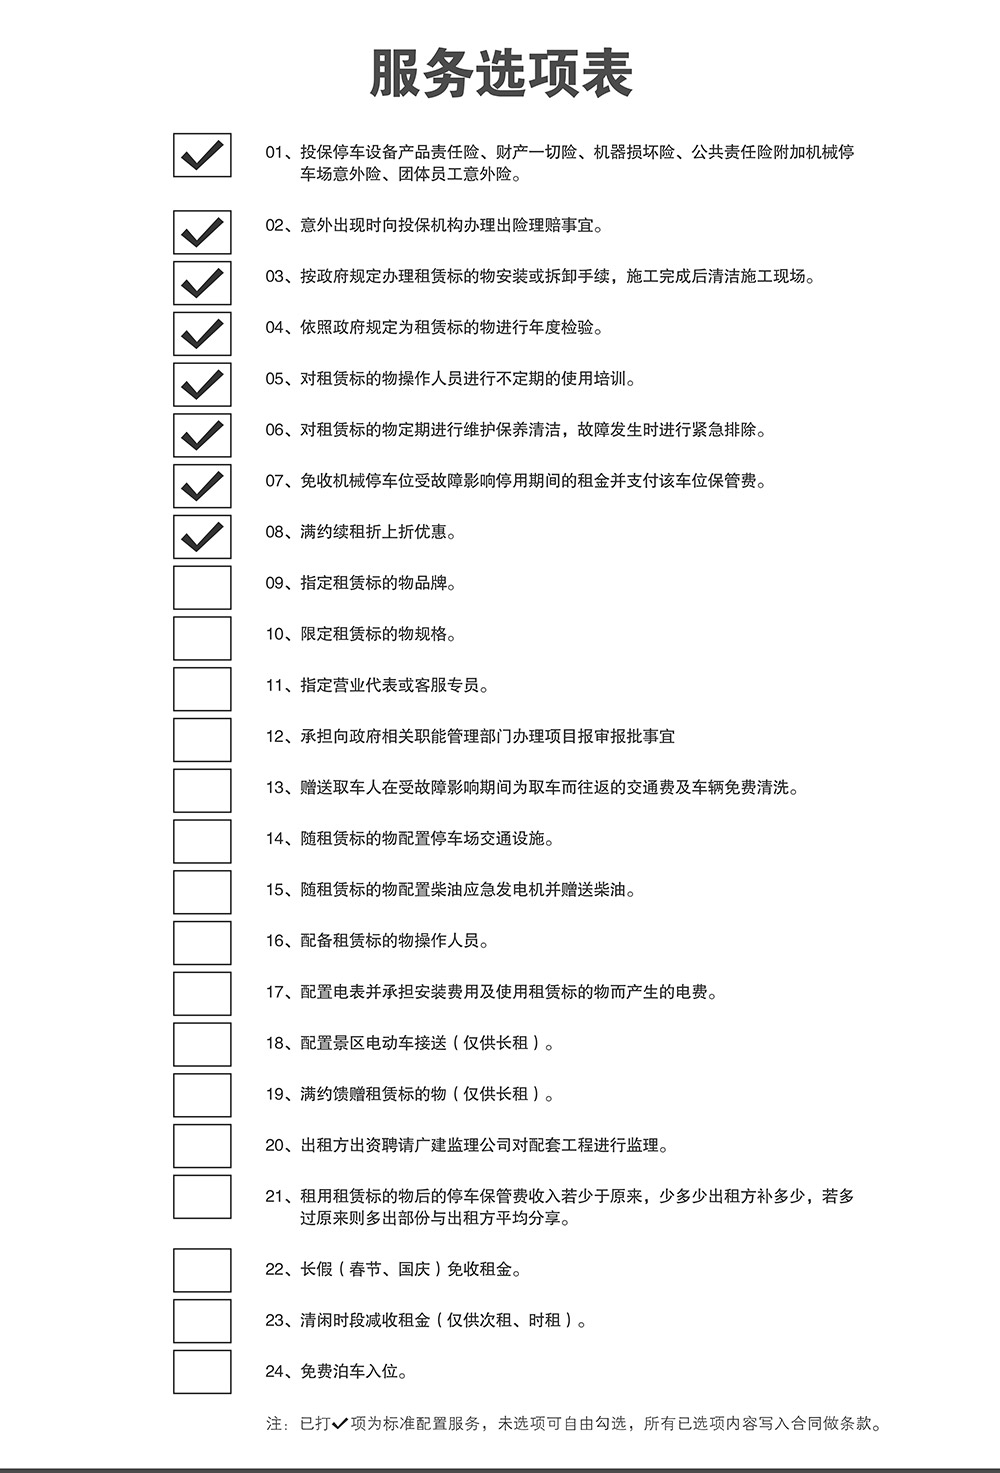 成都重庆停车设备租赁服务选项表.jpg